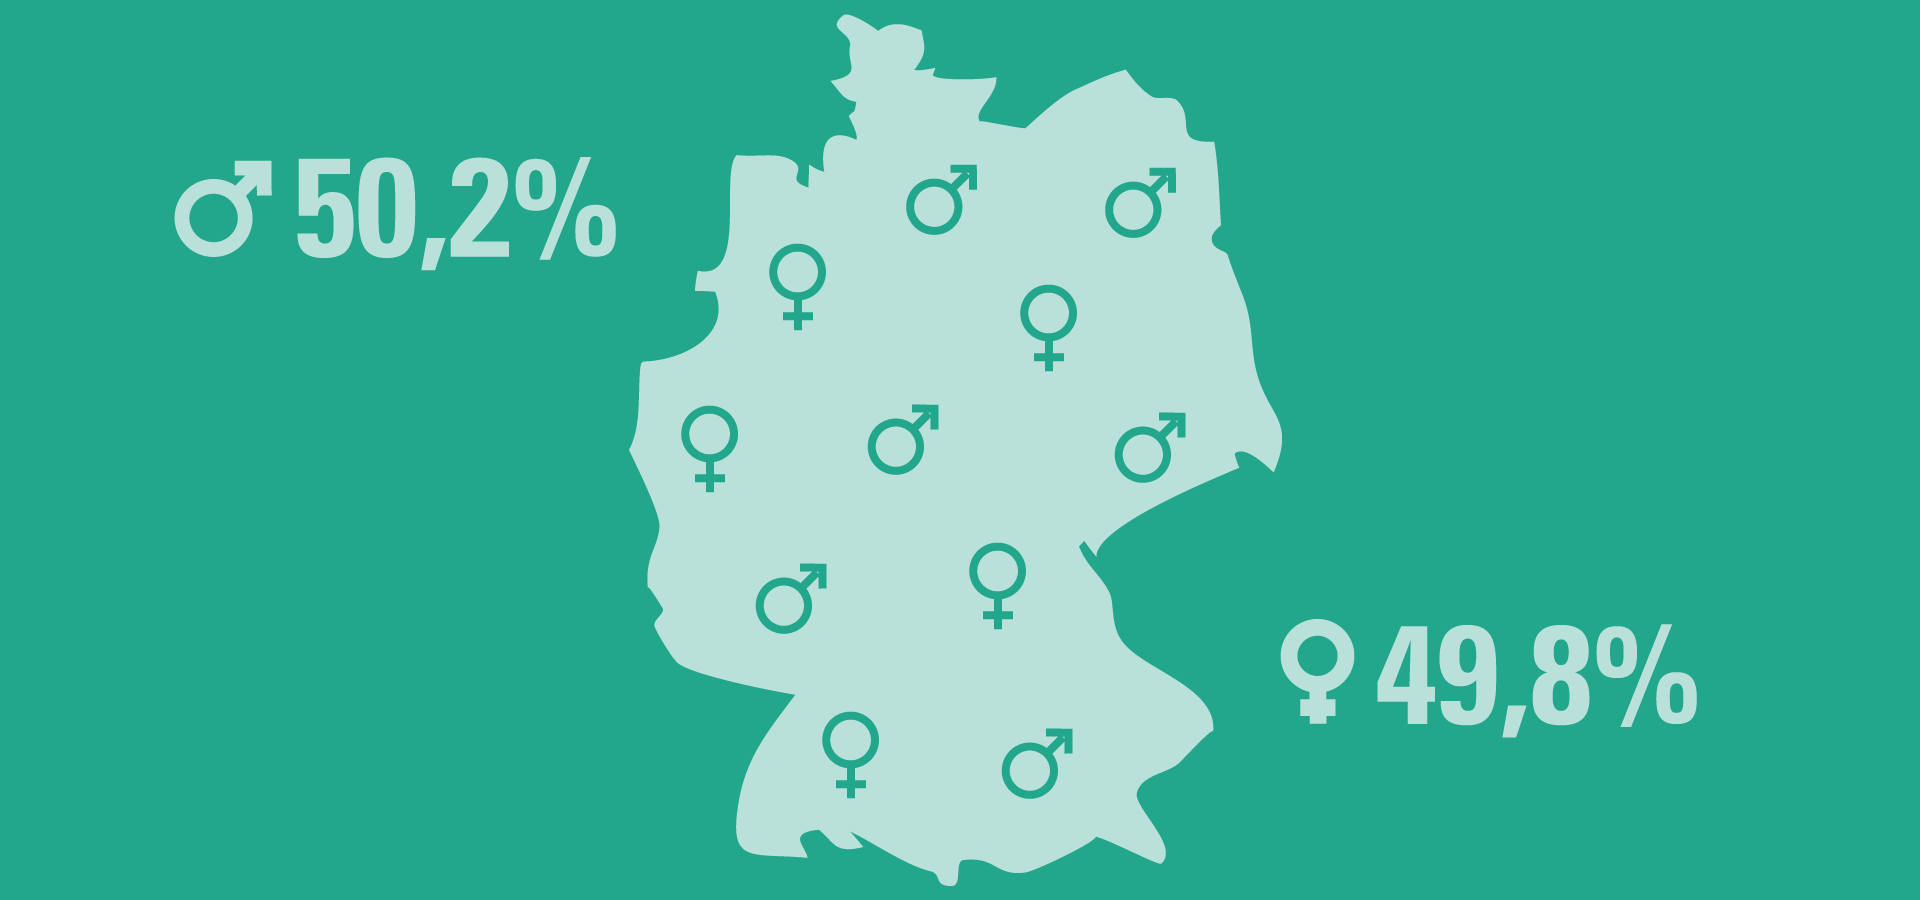 Verteilung Geschlechter: 50,2% männlich - 49,8% weiblich